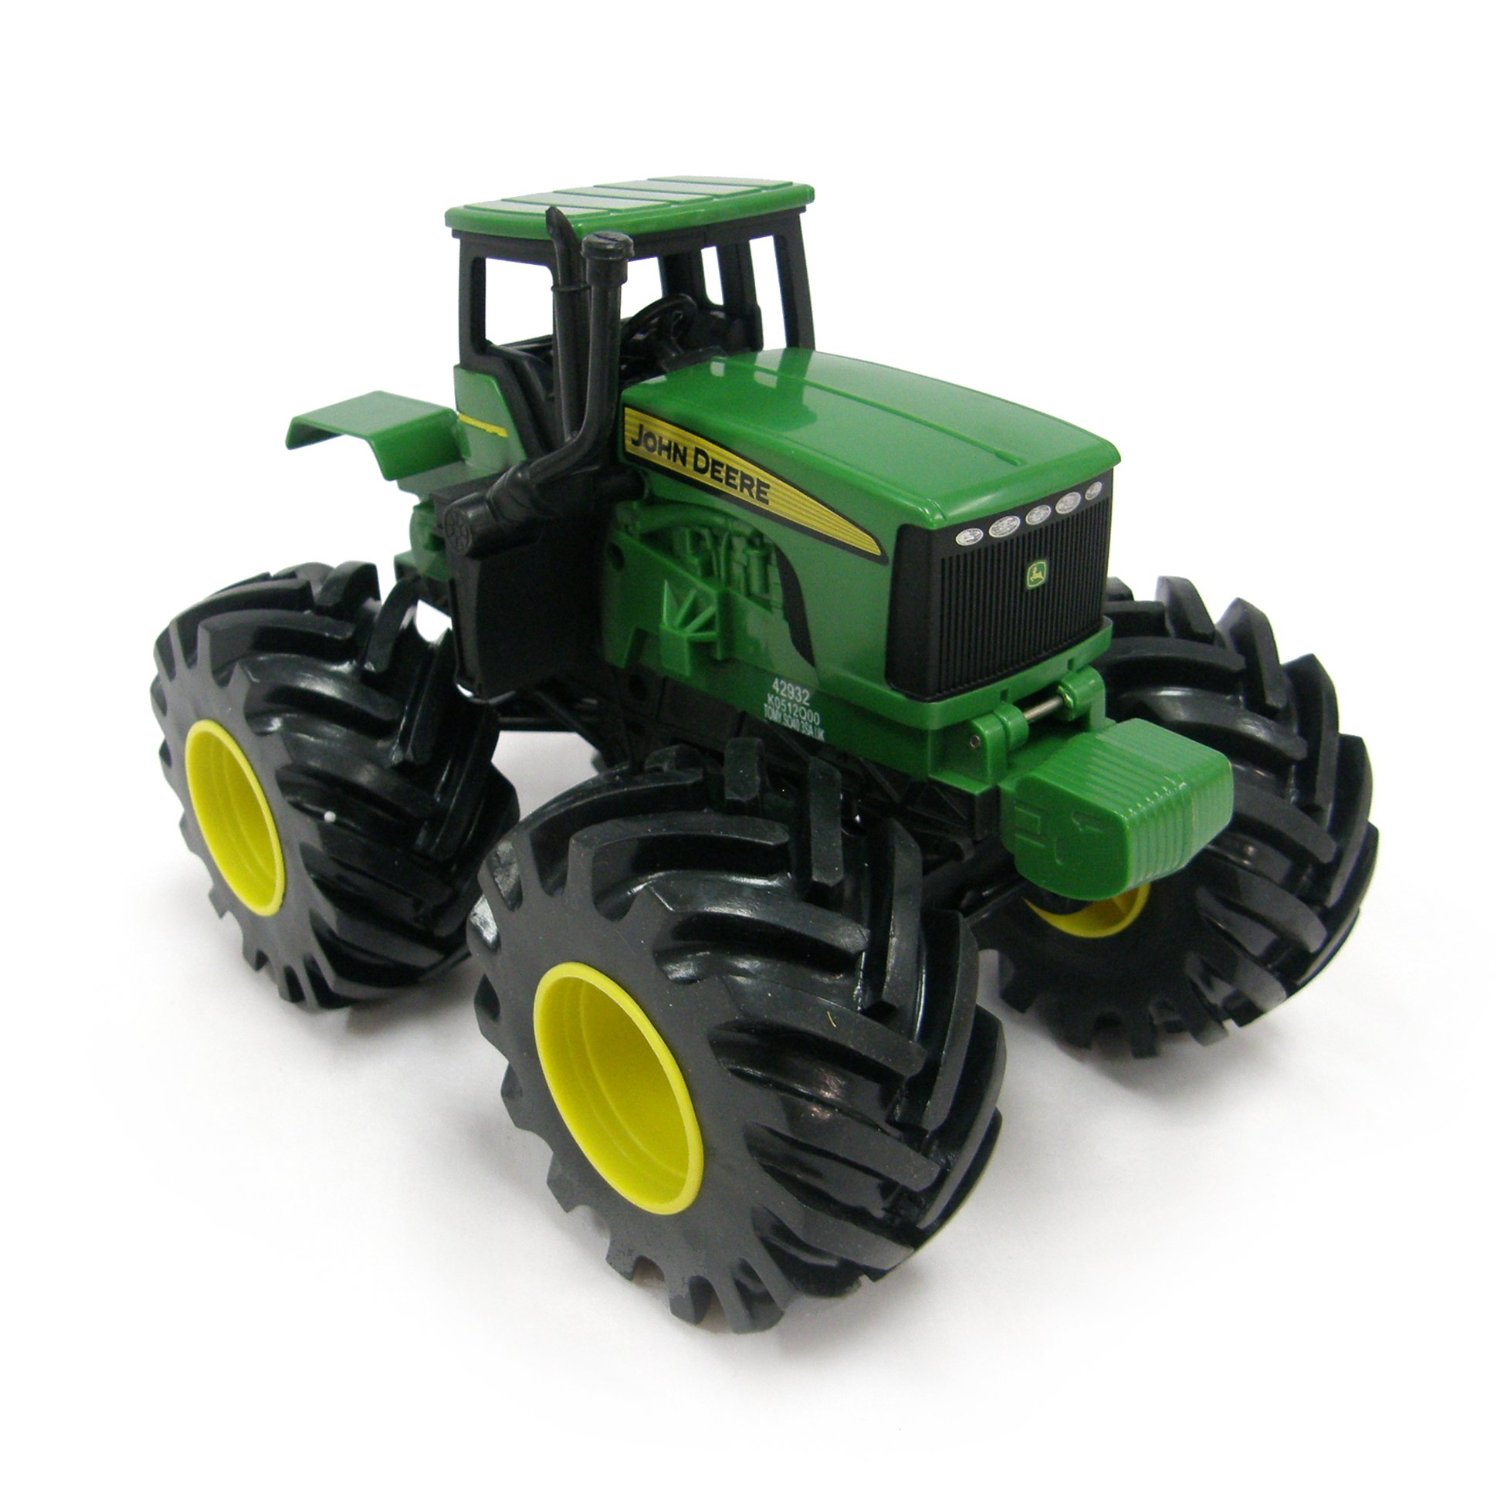 Spielzeug Traktor ab 2 Jahren – Die 15 besten Produkte im Vergleich -   Ratgeber